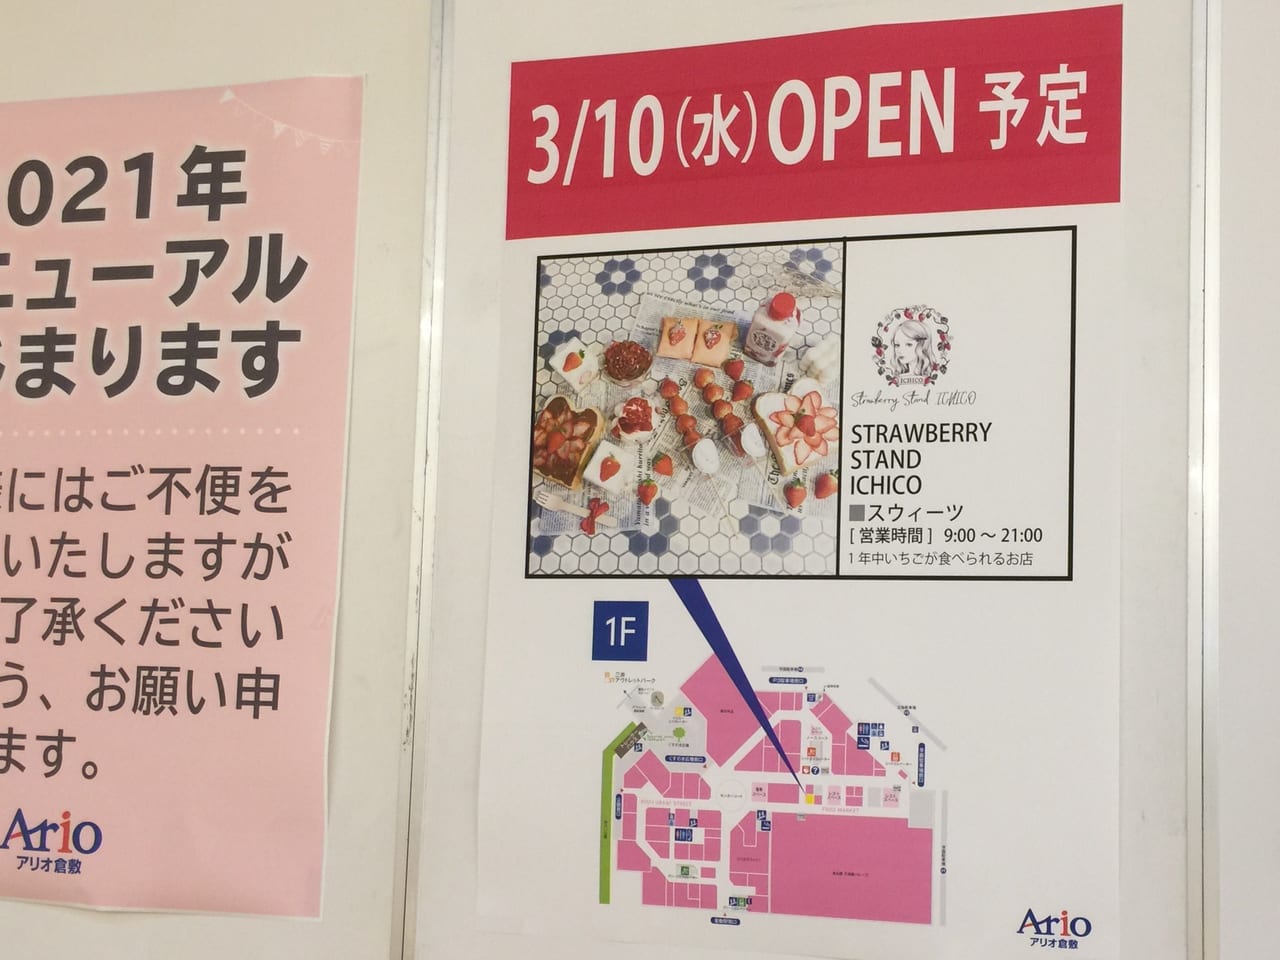 倉敷市 3月10日アリオ倉敷に Strawberry Stand Ichico がオープンします 号外net 倉敷市